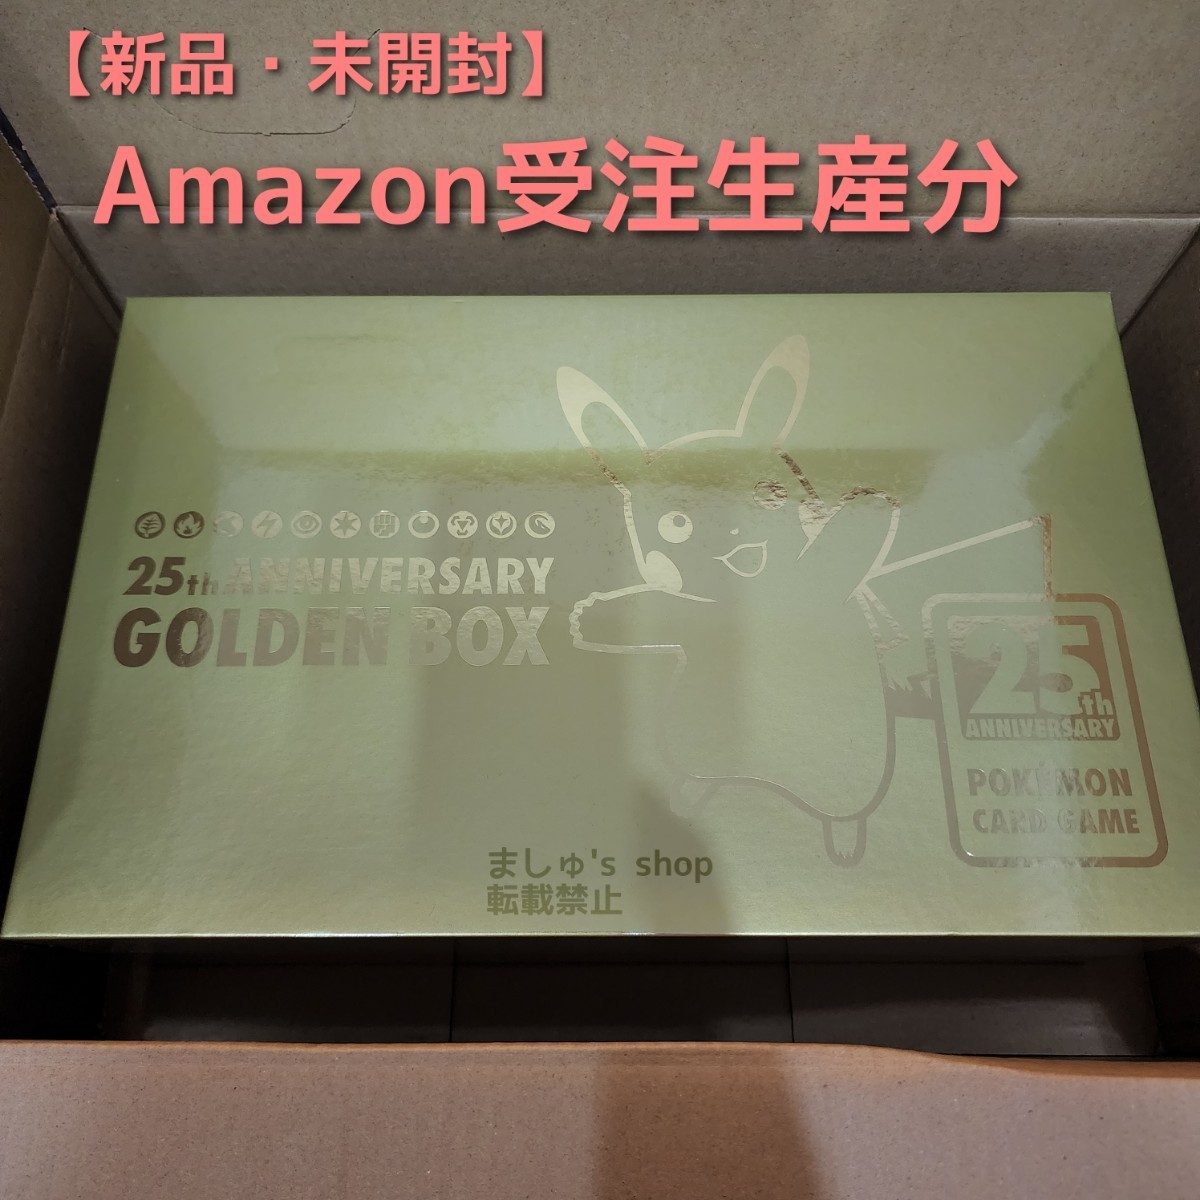 オンラインを販売 - Amazon産 ゴールデンボックス25th シュリンク付き